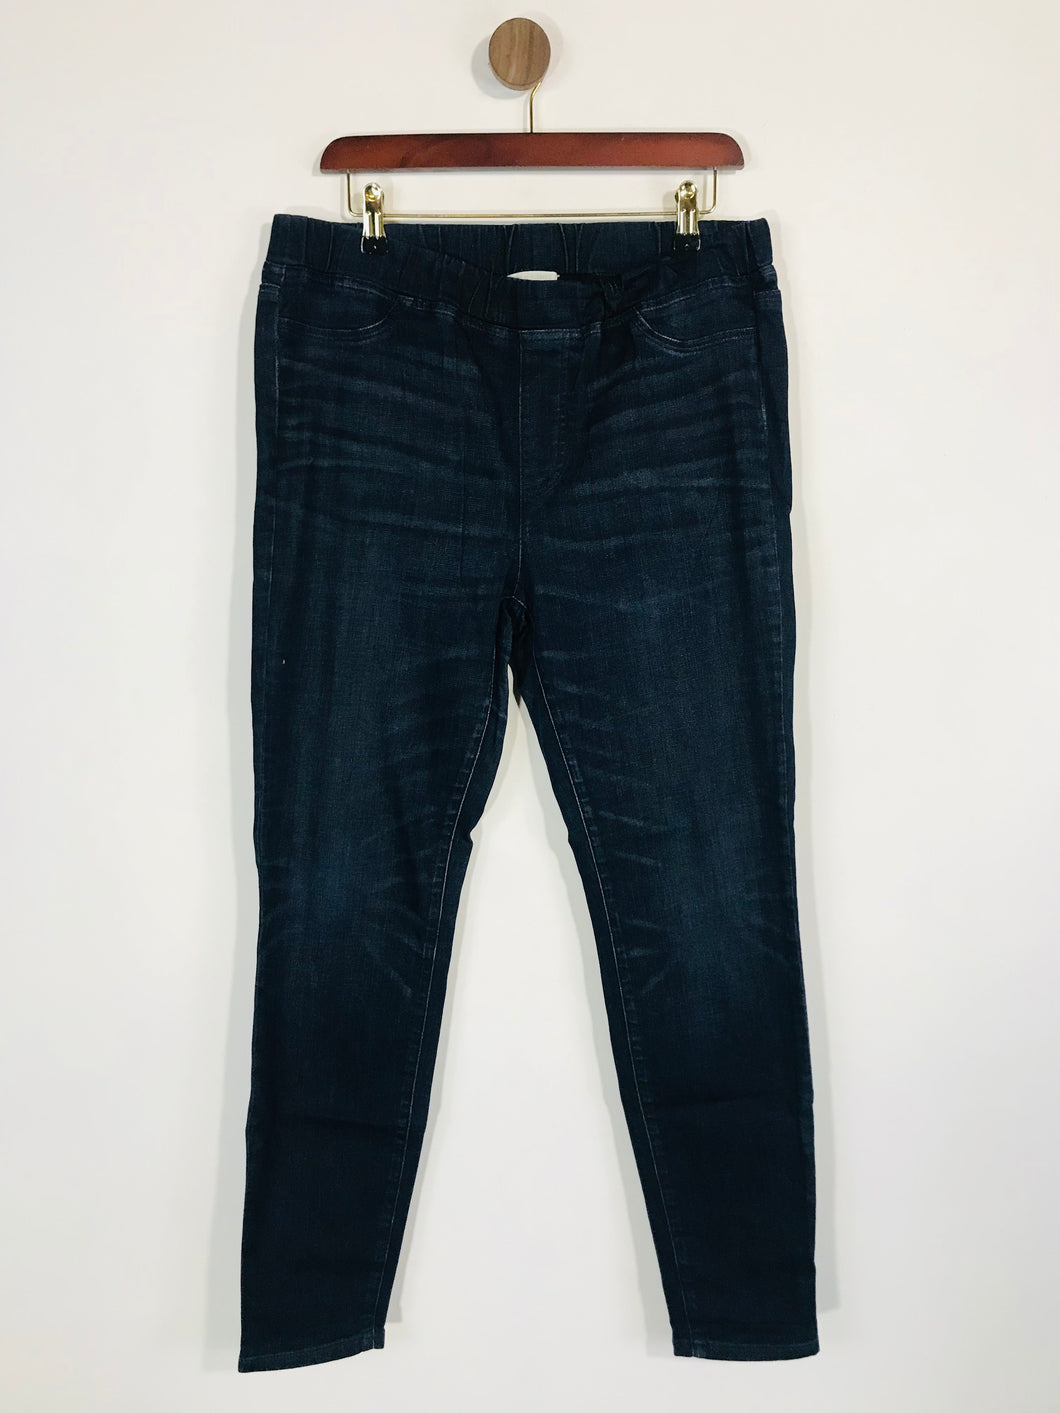 Eileen Fisher Women's Jeggings Jeans | M UK10-12 | Blue